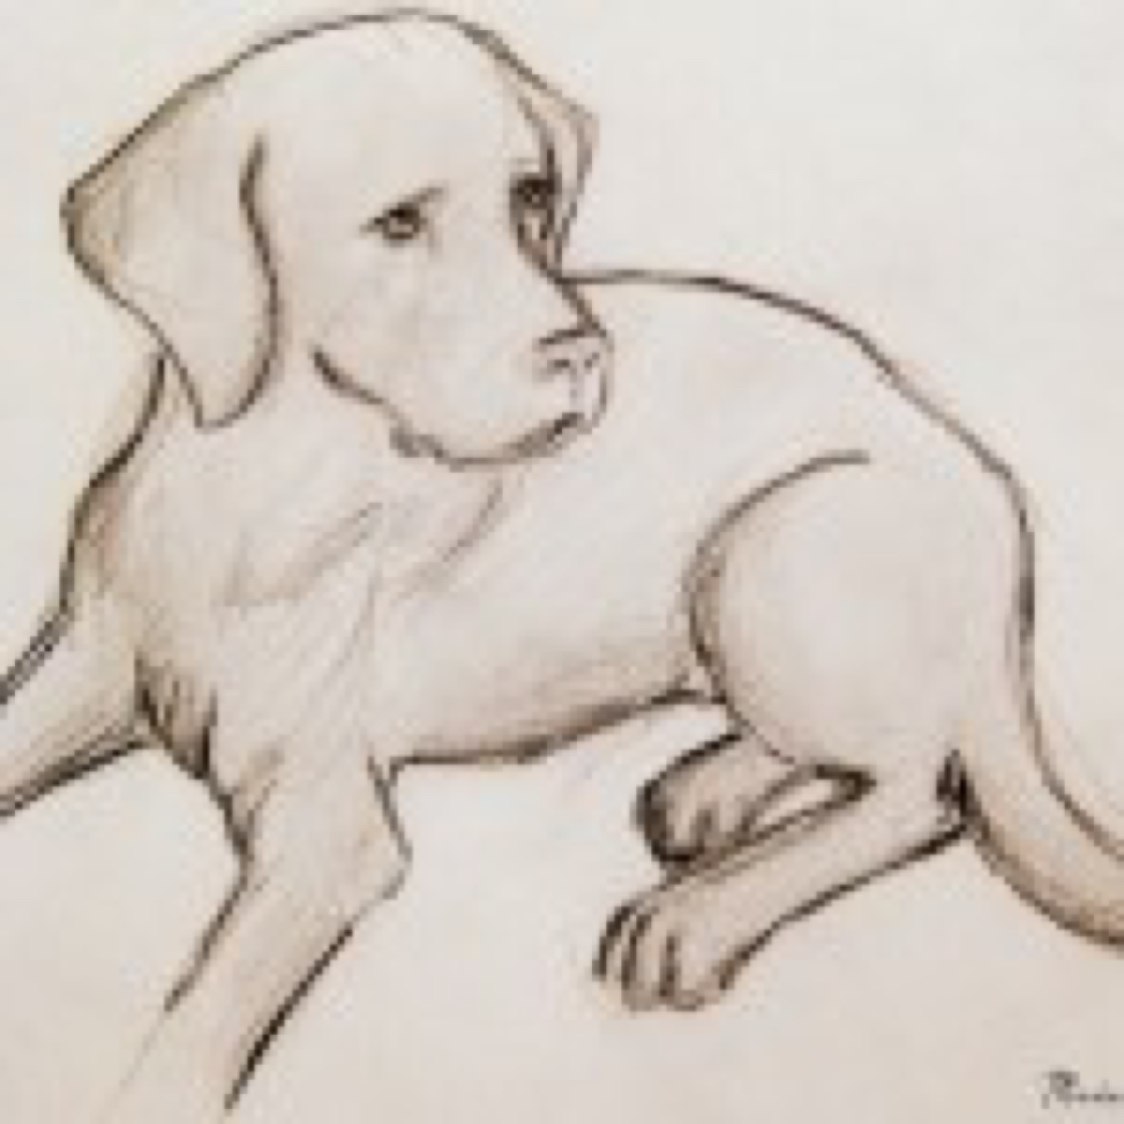 нарисованные собаки картинки простые